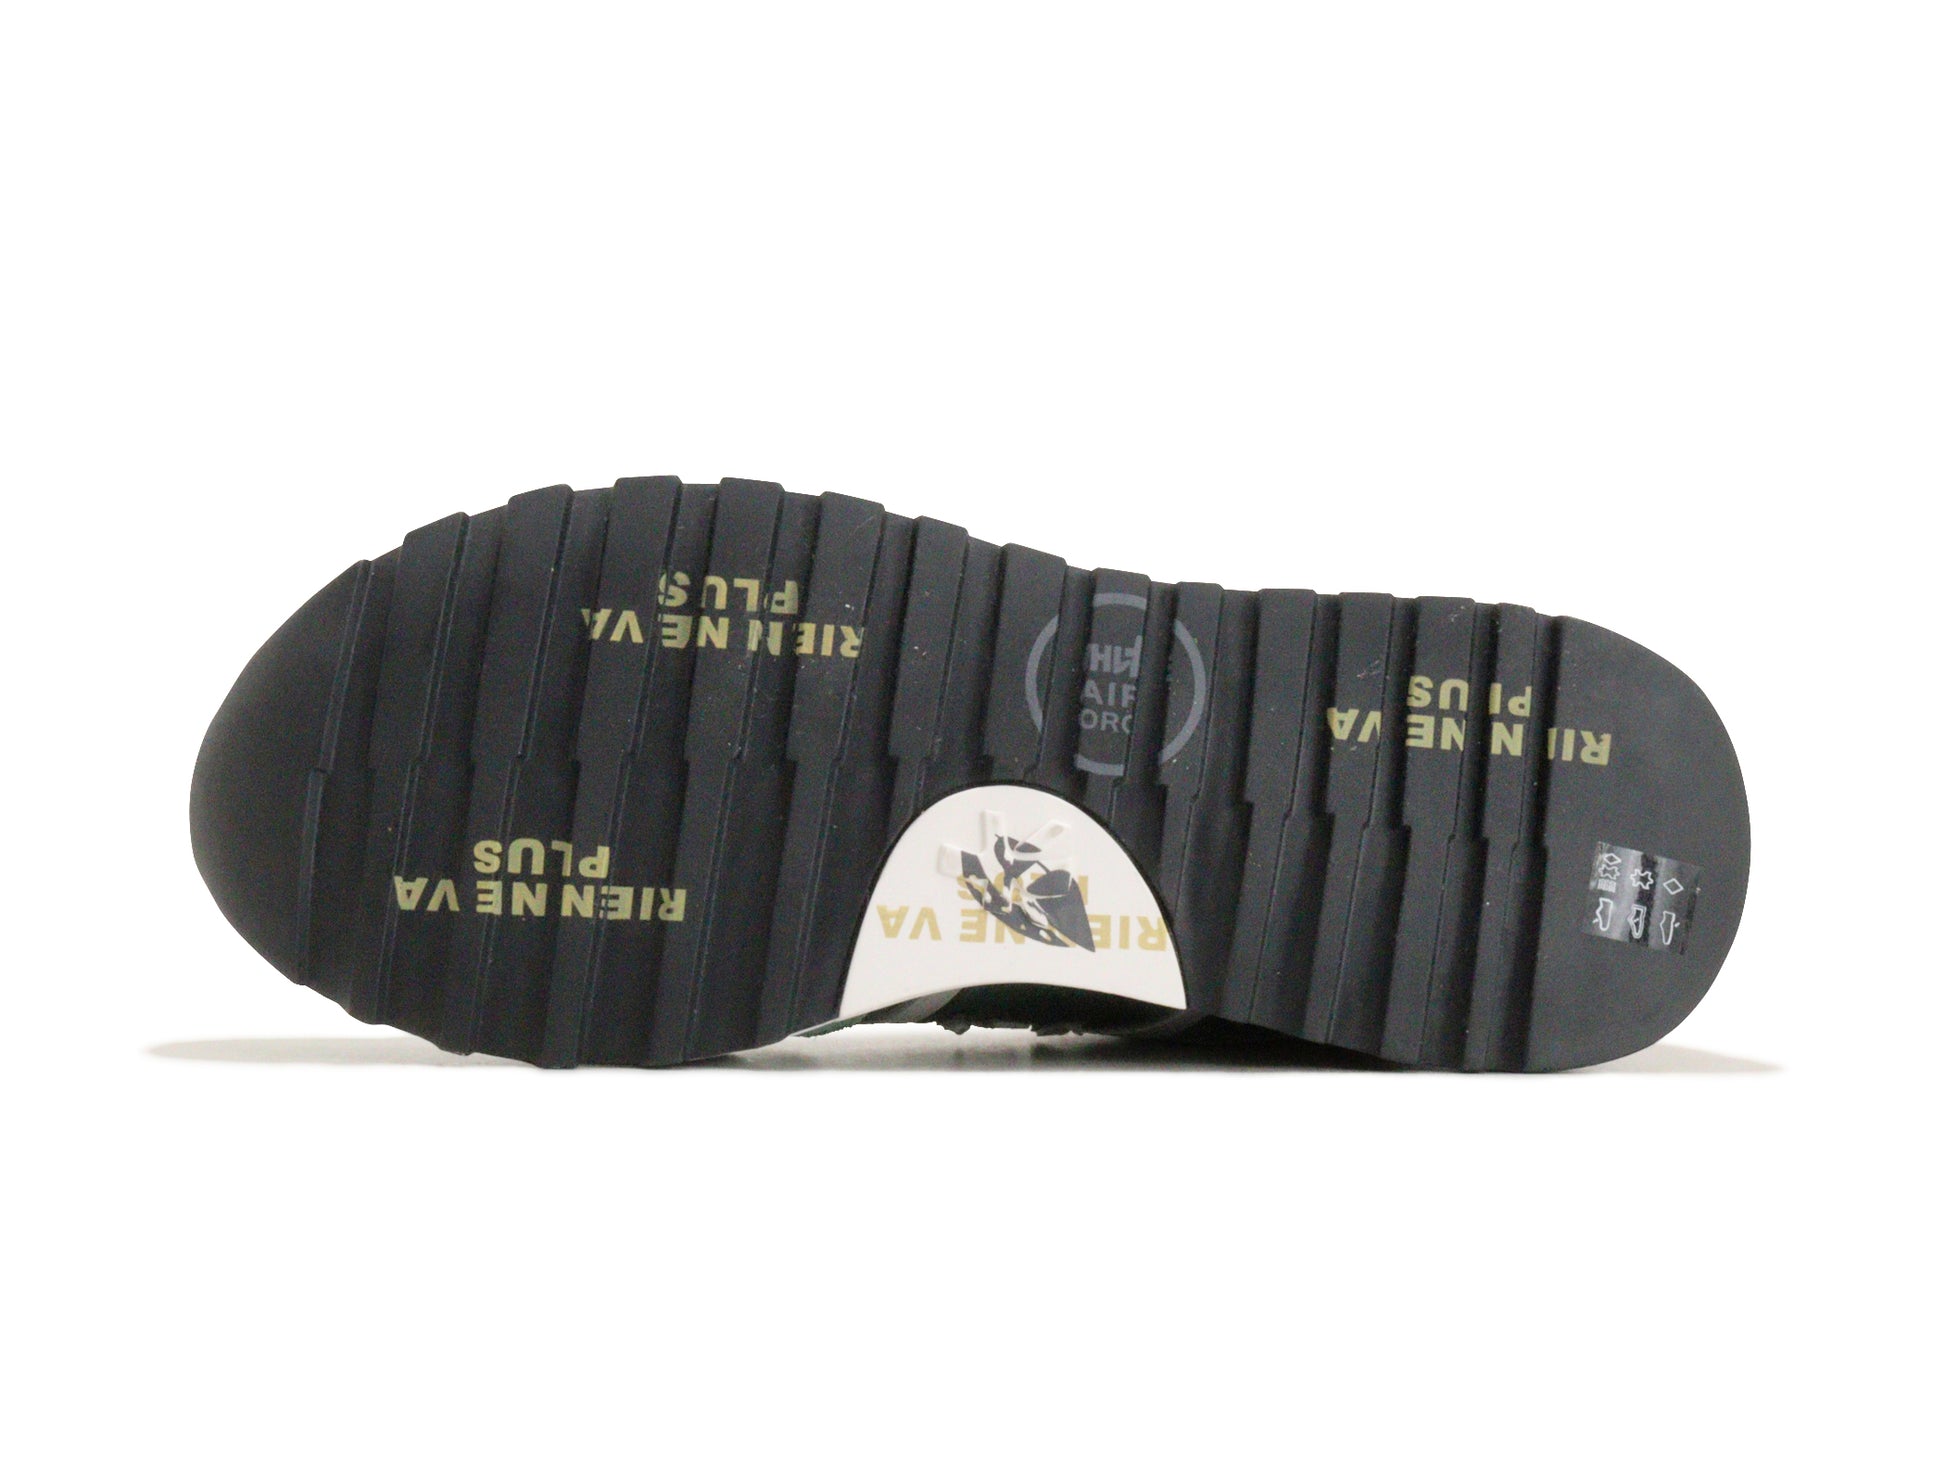 PREMIATAのスニーカー「4588」の靴底の商品画像